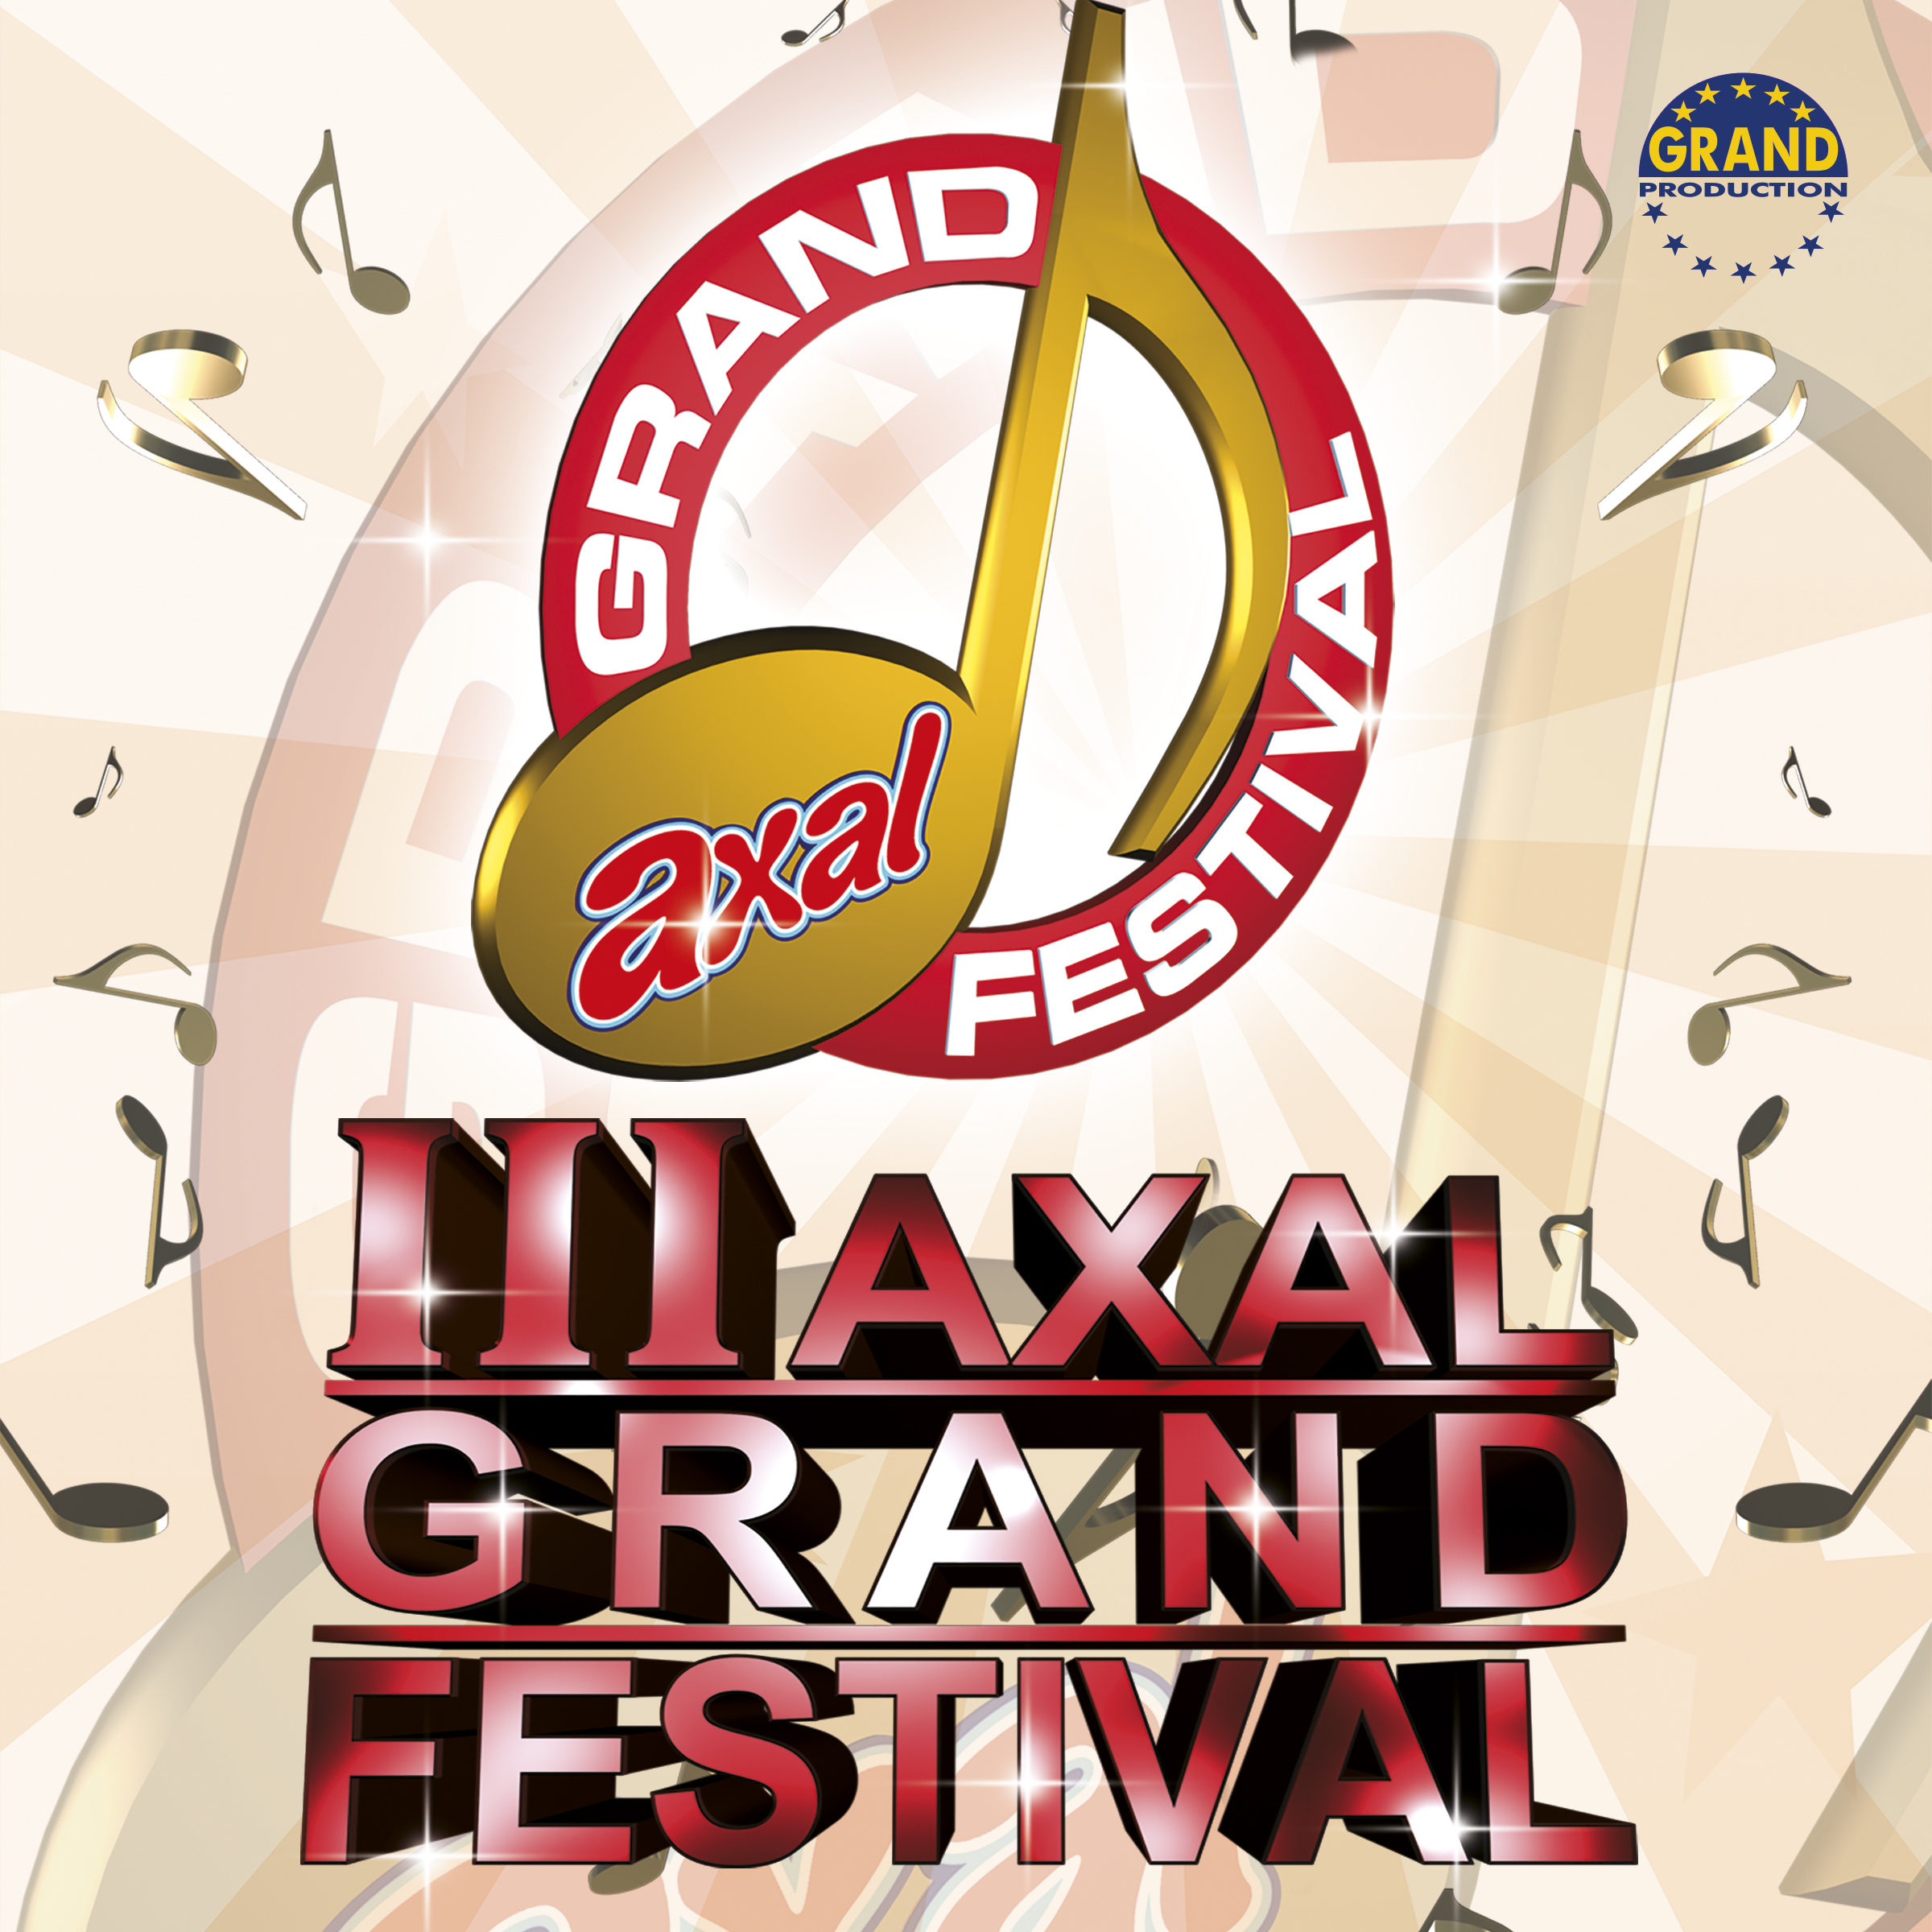 III Axal Grand festival 2010